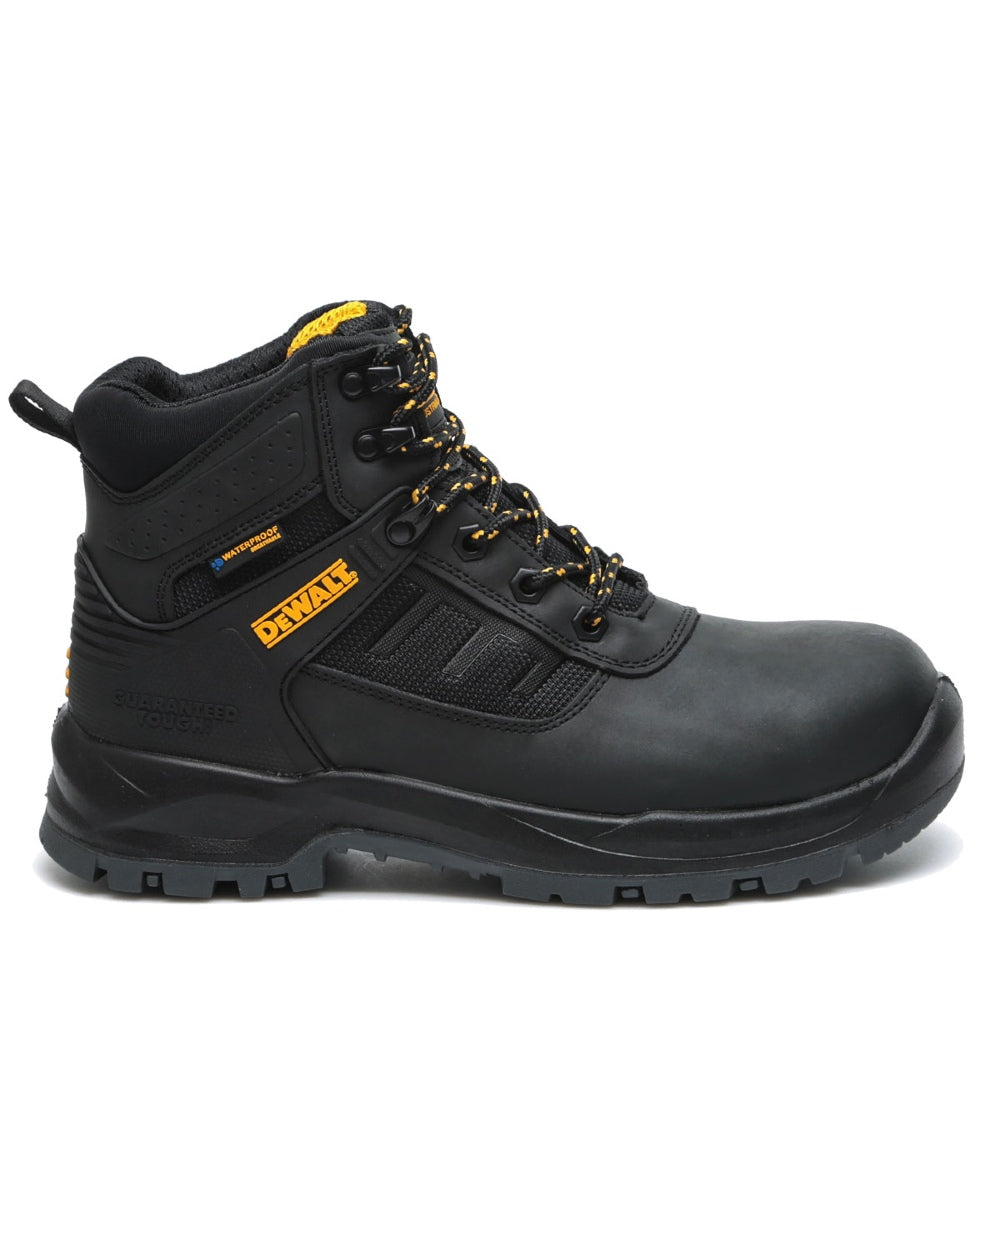 DeWalt Douglas Waterproof Safety Boots in Black